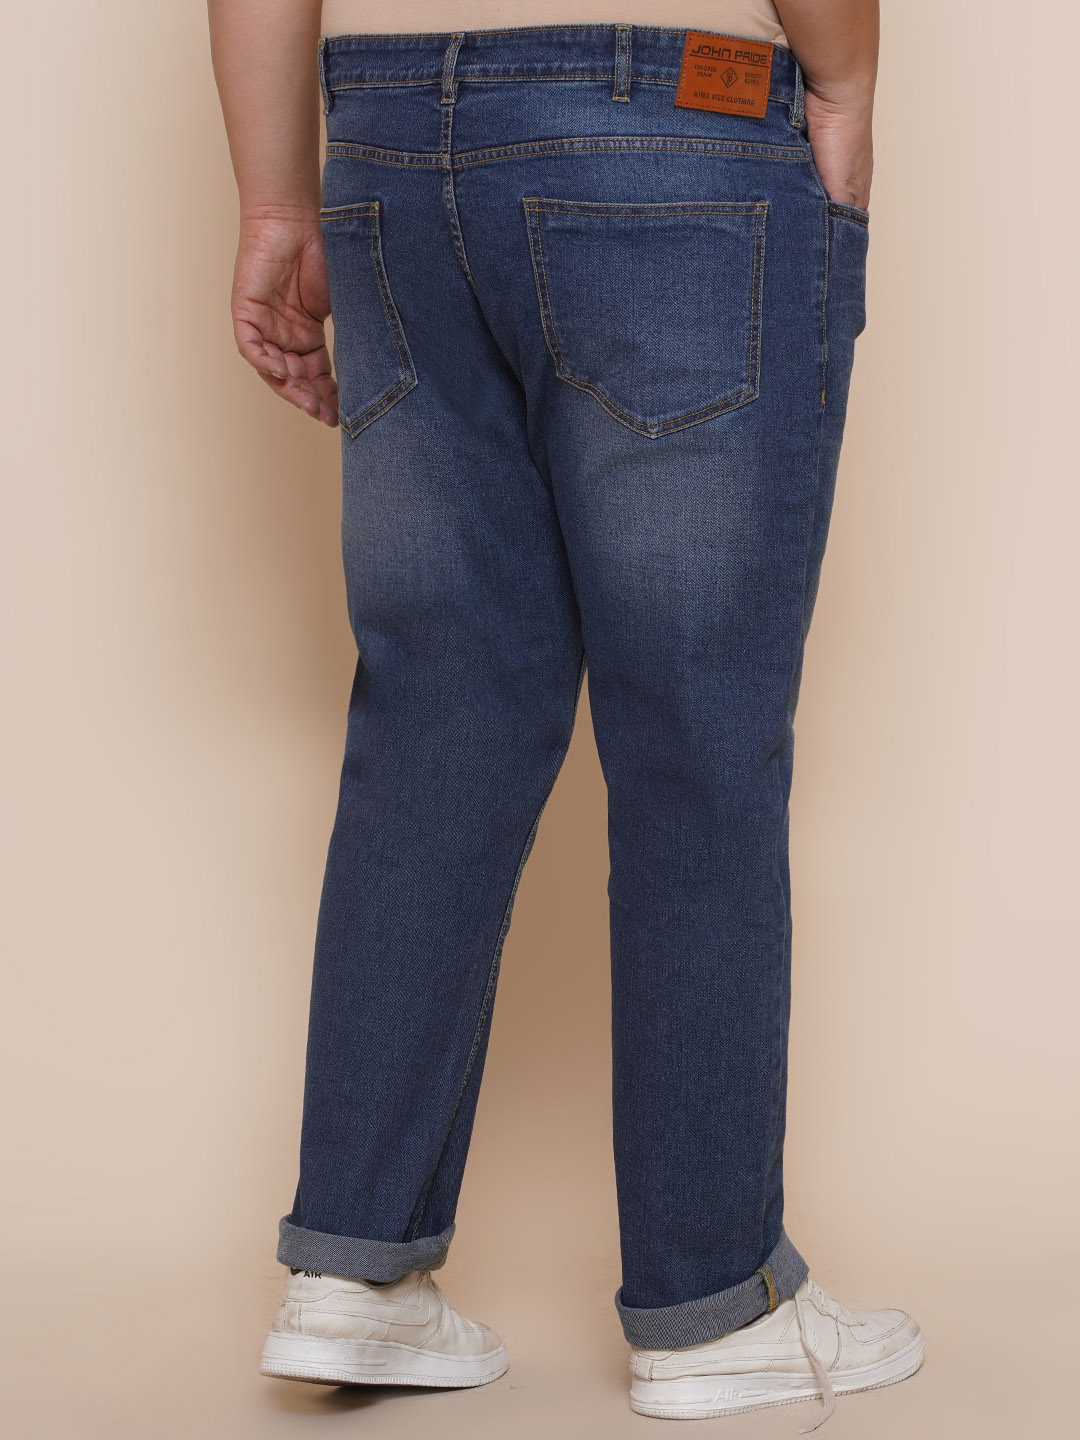 bottomwear/jeans/EJPJ25086/ejpj25086-5.jpg